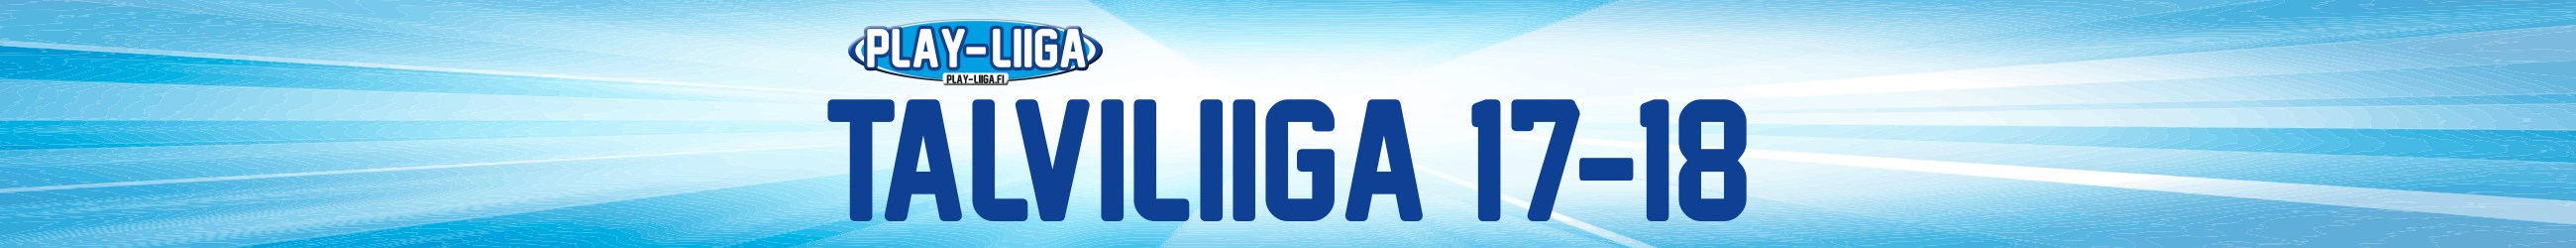 Play-Liiga Talvi 2017-2018